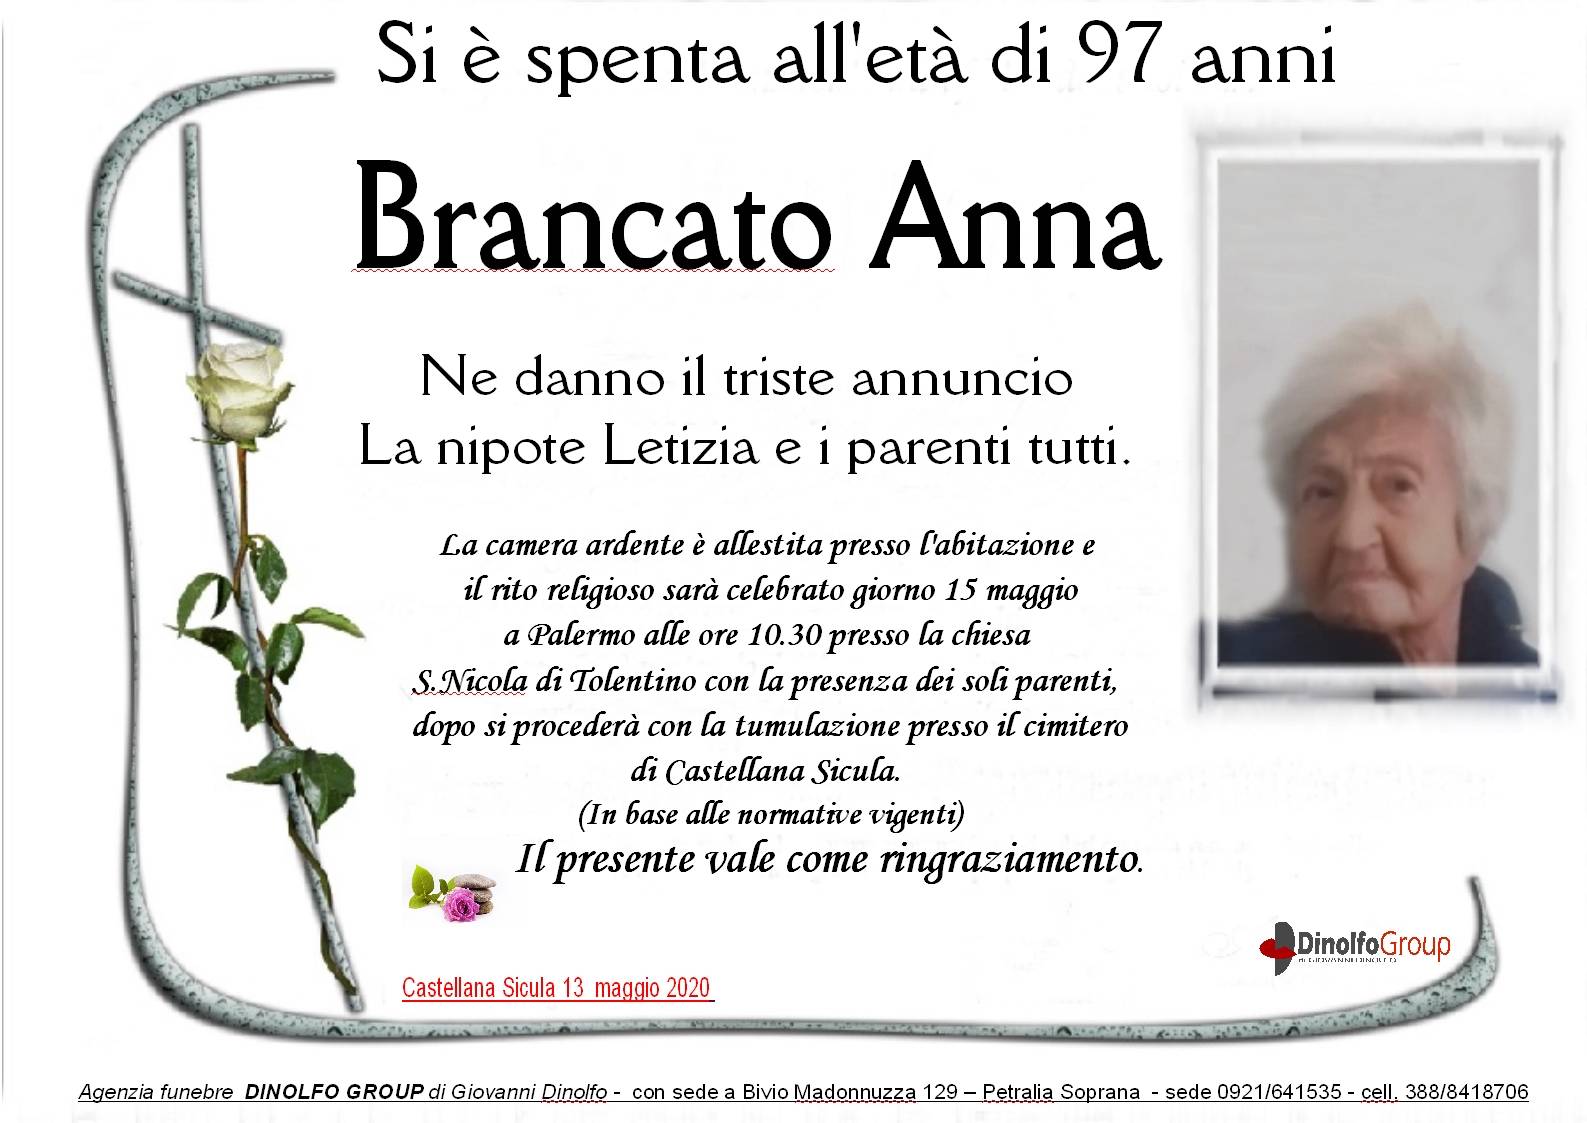 Anna Brancato